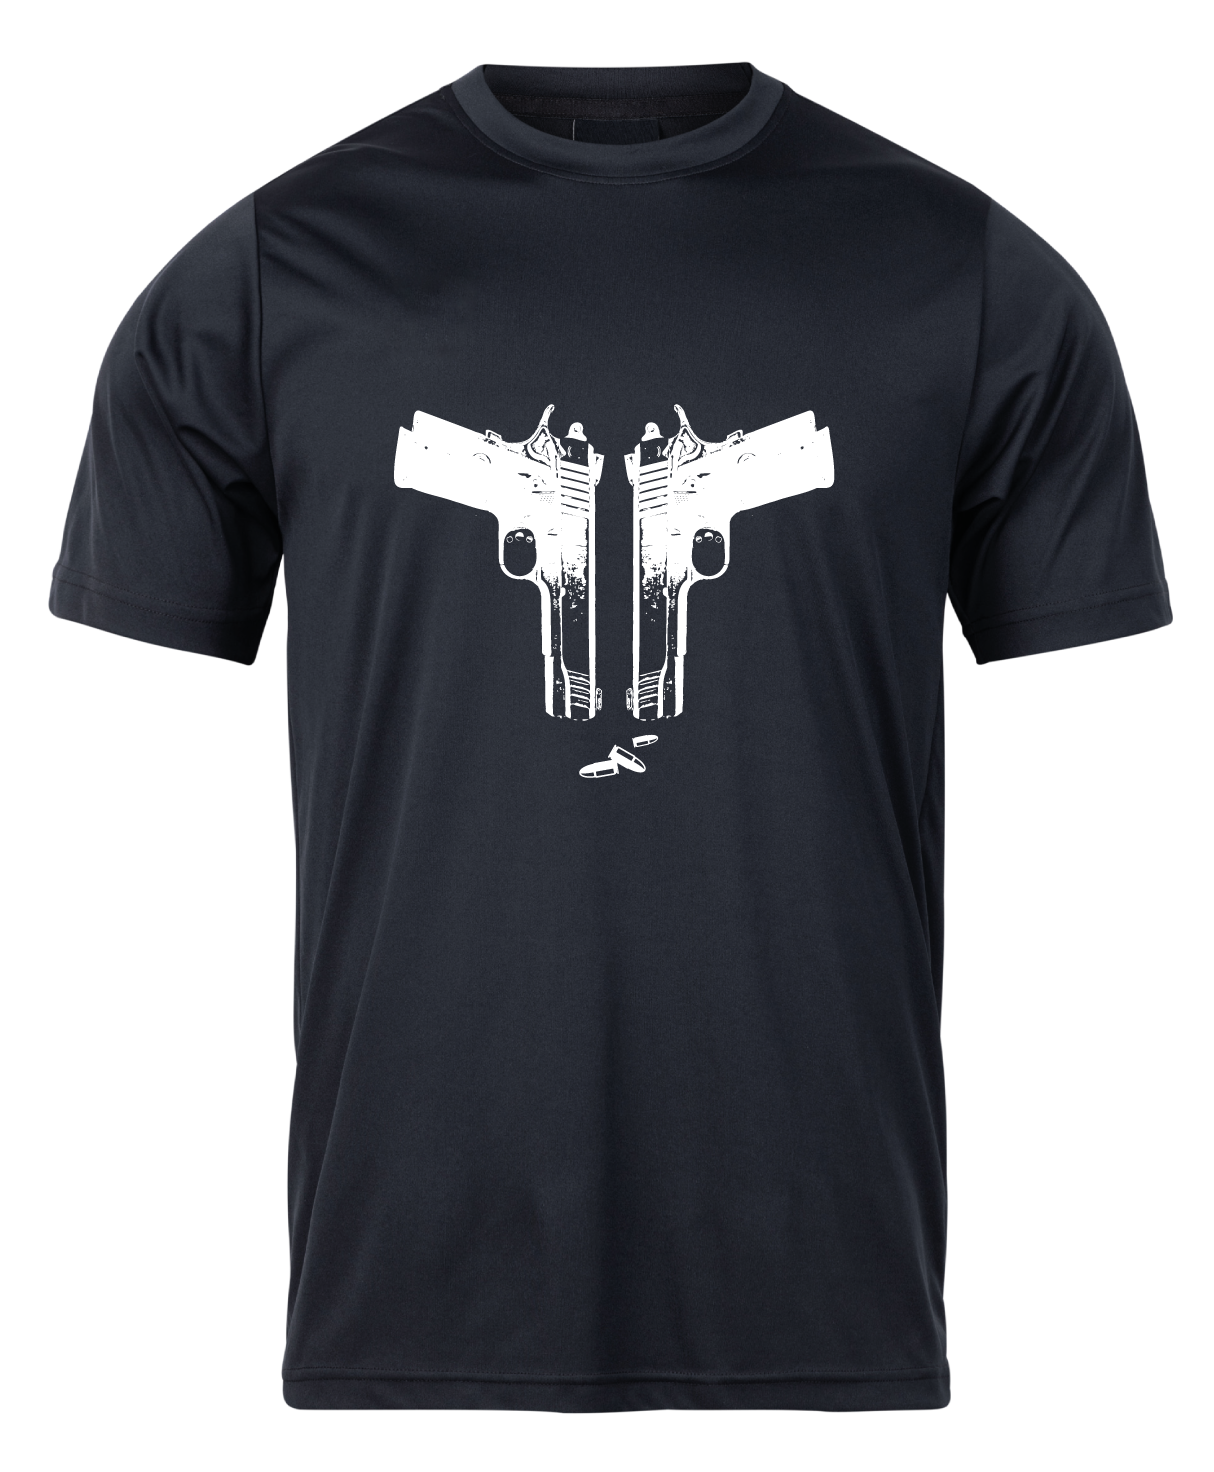 Pánske poľovnícke tričko TETRAO zbrane - čierne   2XL